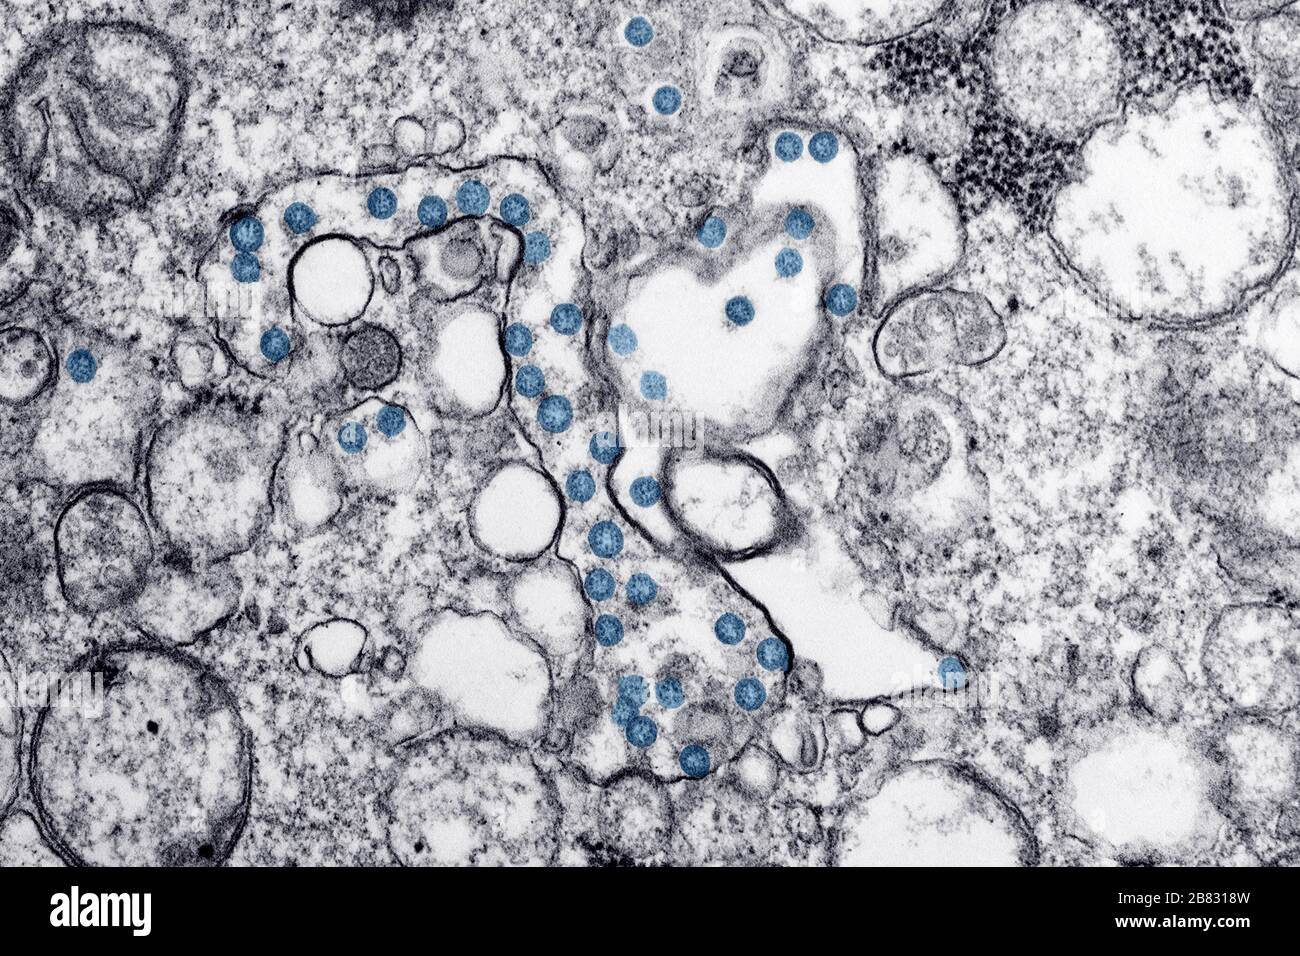 Transmissionselektronenmikroskopie Bild eines Isolats vom ersten US-Fall von COVID-19, früher bekannt als 2019-nCoV, einem Coronavirus, März 2020. Die blau gefärbten kugelförmigen Viruspartikel enthalten Querschnitte durch das virale Genom, die als schwarze Punkte angesehen werden. Bild mit freundlicher Genehmigung CDC/Hannah A Bullock, Azaibi Tamin. () Stockfoto